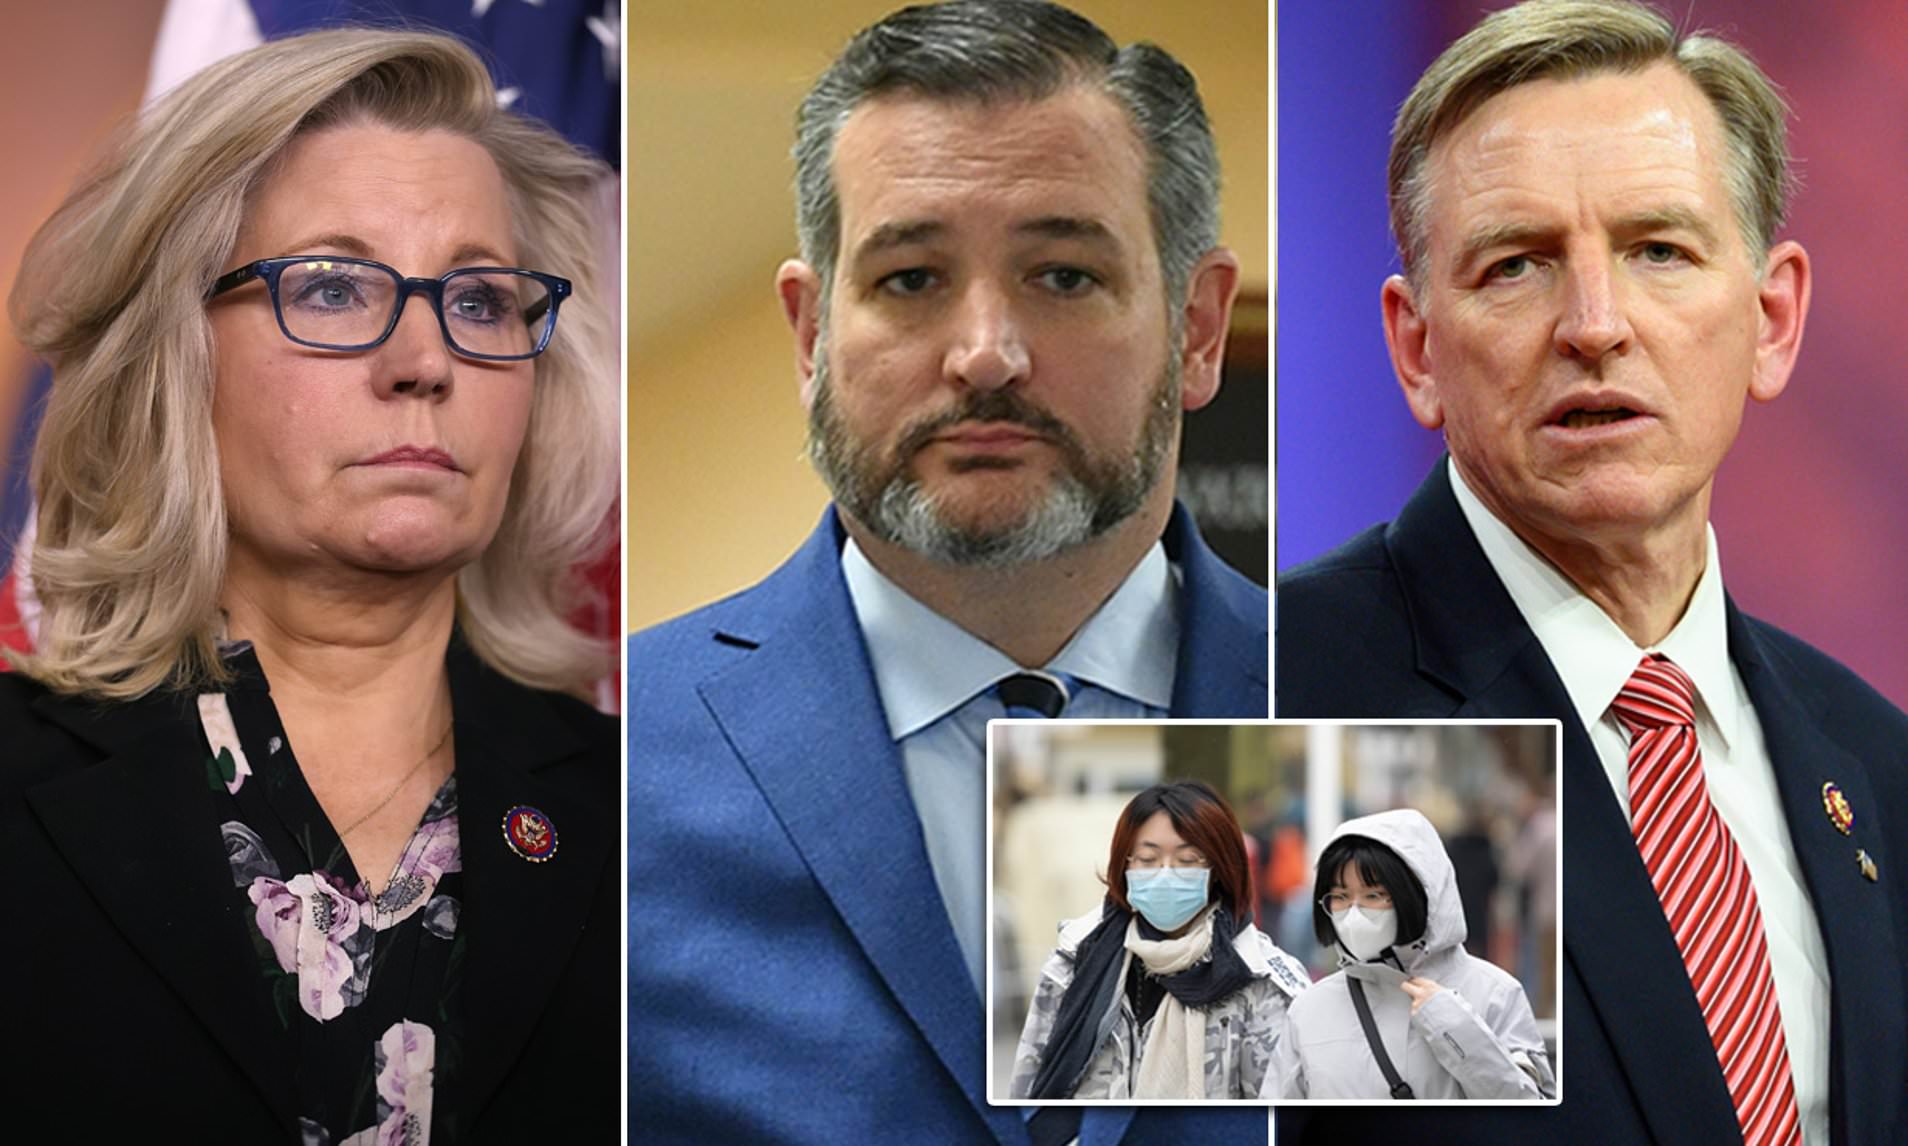 Five senior Republicans in self-quarantine over coronavirus